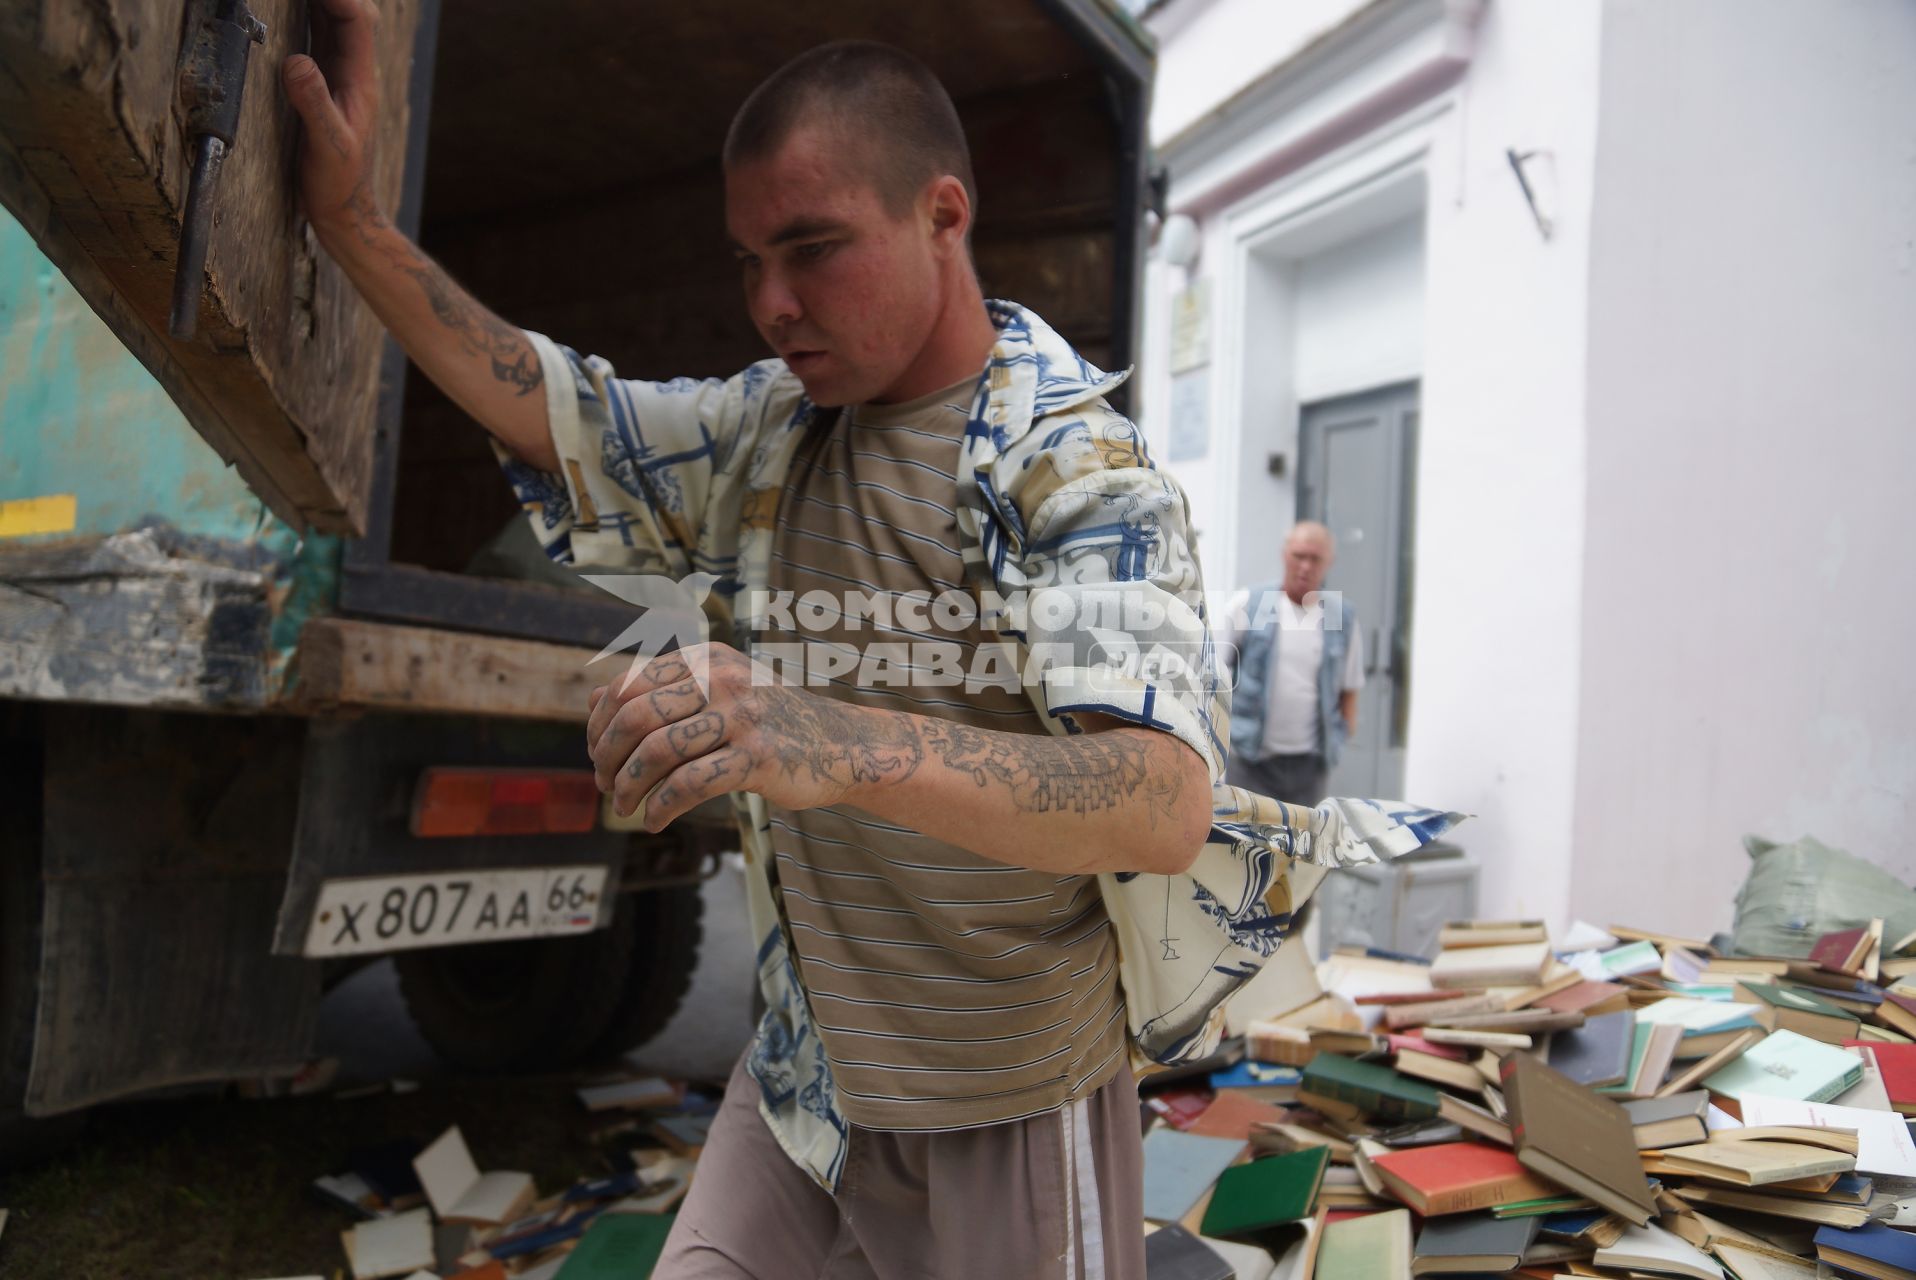 Библиотека дома Учителя в Екатеринбурге избавлялась от неликвидных книг выкидывая их в окно с 3-го этажа. парень с наколками на руках открывает дверцу фуры для погрузки книг